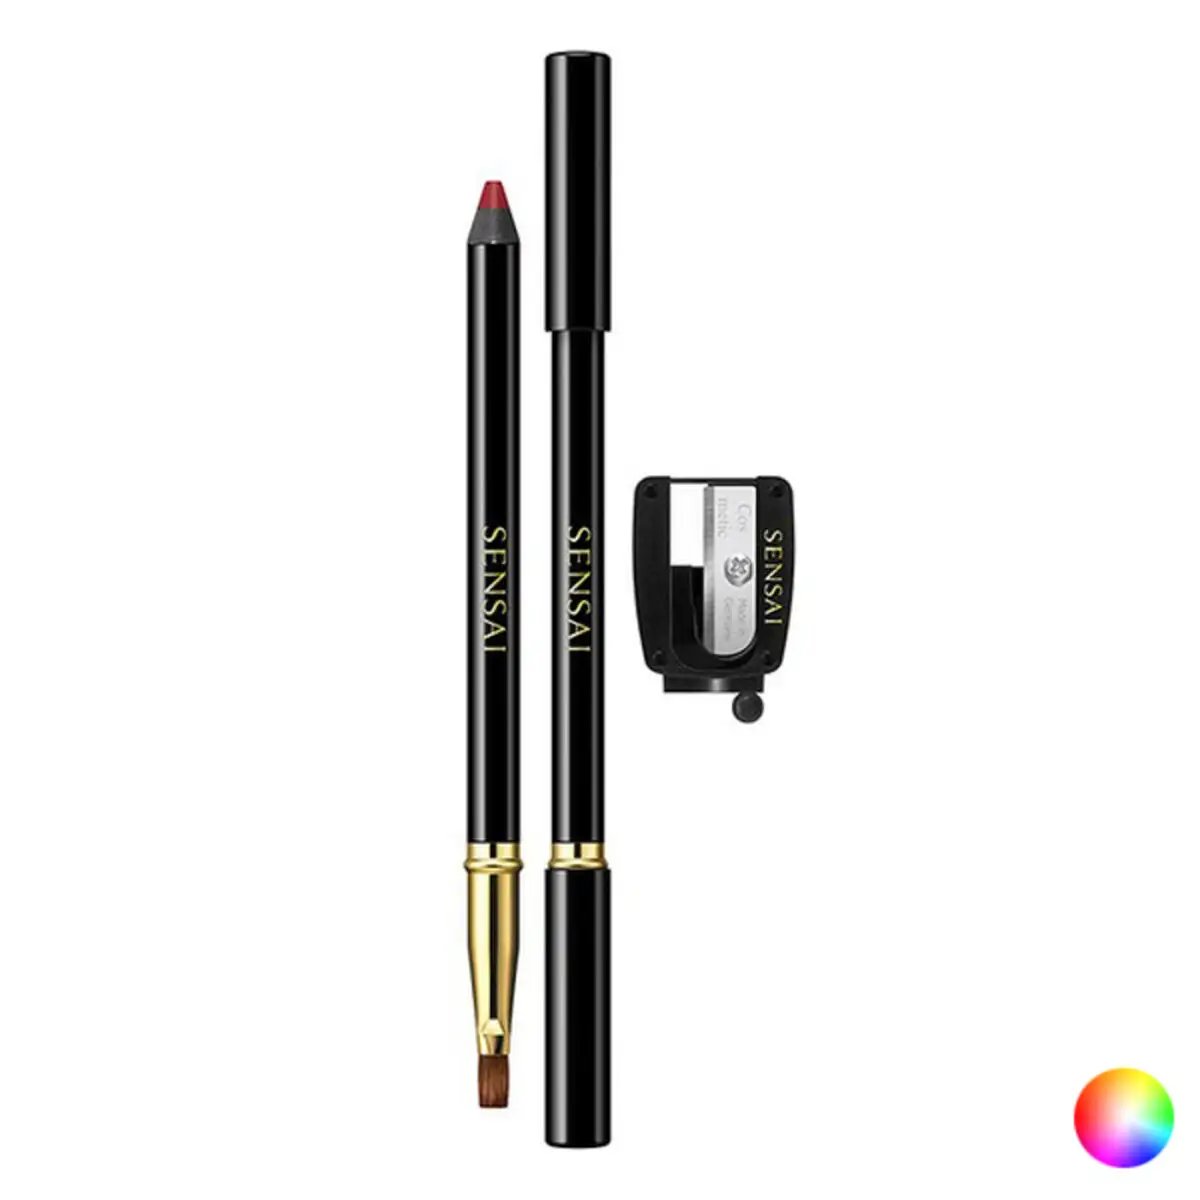 Lip liner colors kanebo_9517. DIAYTAR SENEGAL - Votre Passage vers l'Éclat et la Beauté. Explorez notre boutique en ligne et trouvez des produits qui subliment votre apparence et votre espace.